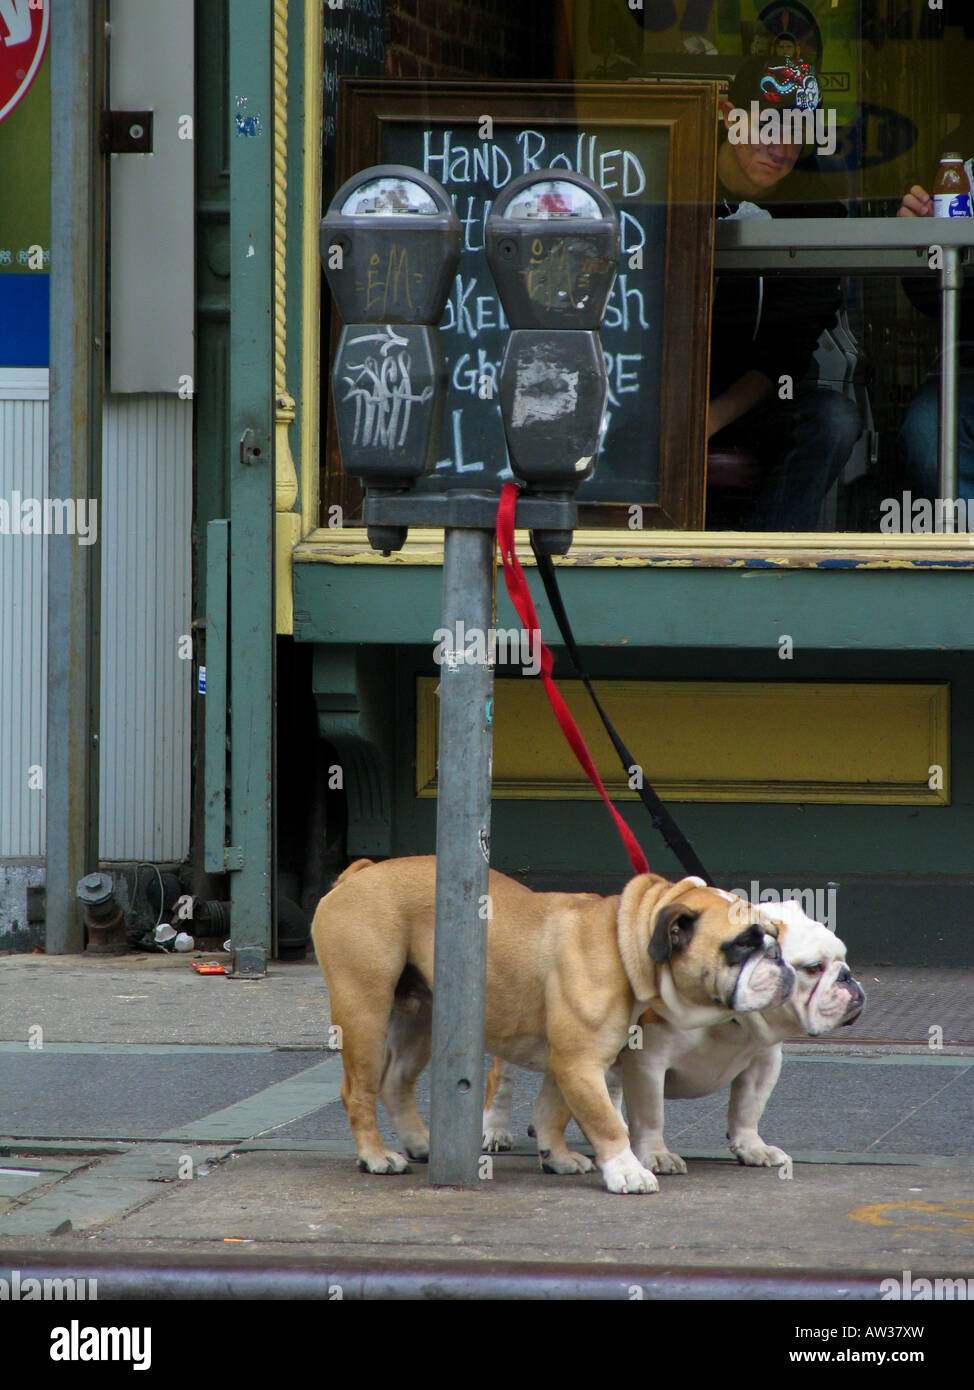 Alapaha Blue Blood Bulldogge (Canis lupus f. familiaris), deux chiens en attente liée à un parcomètre, USA, Etats-Unis, New York (État) Banque D'Images